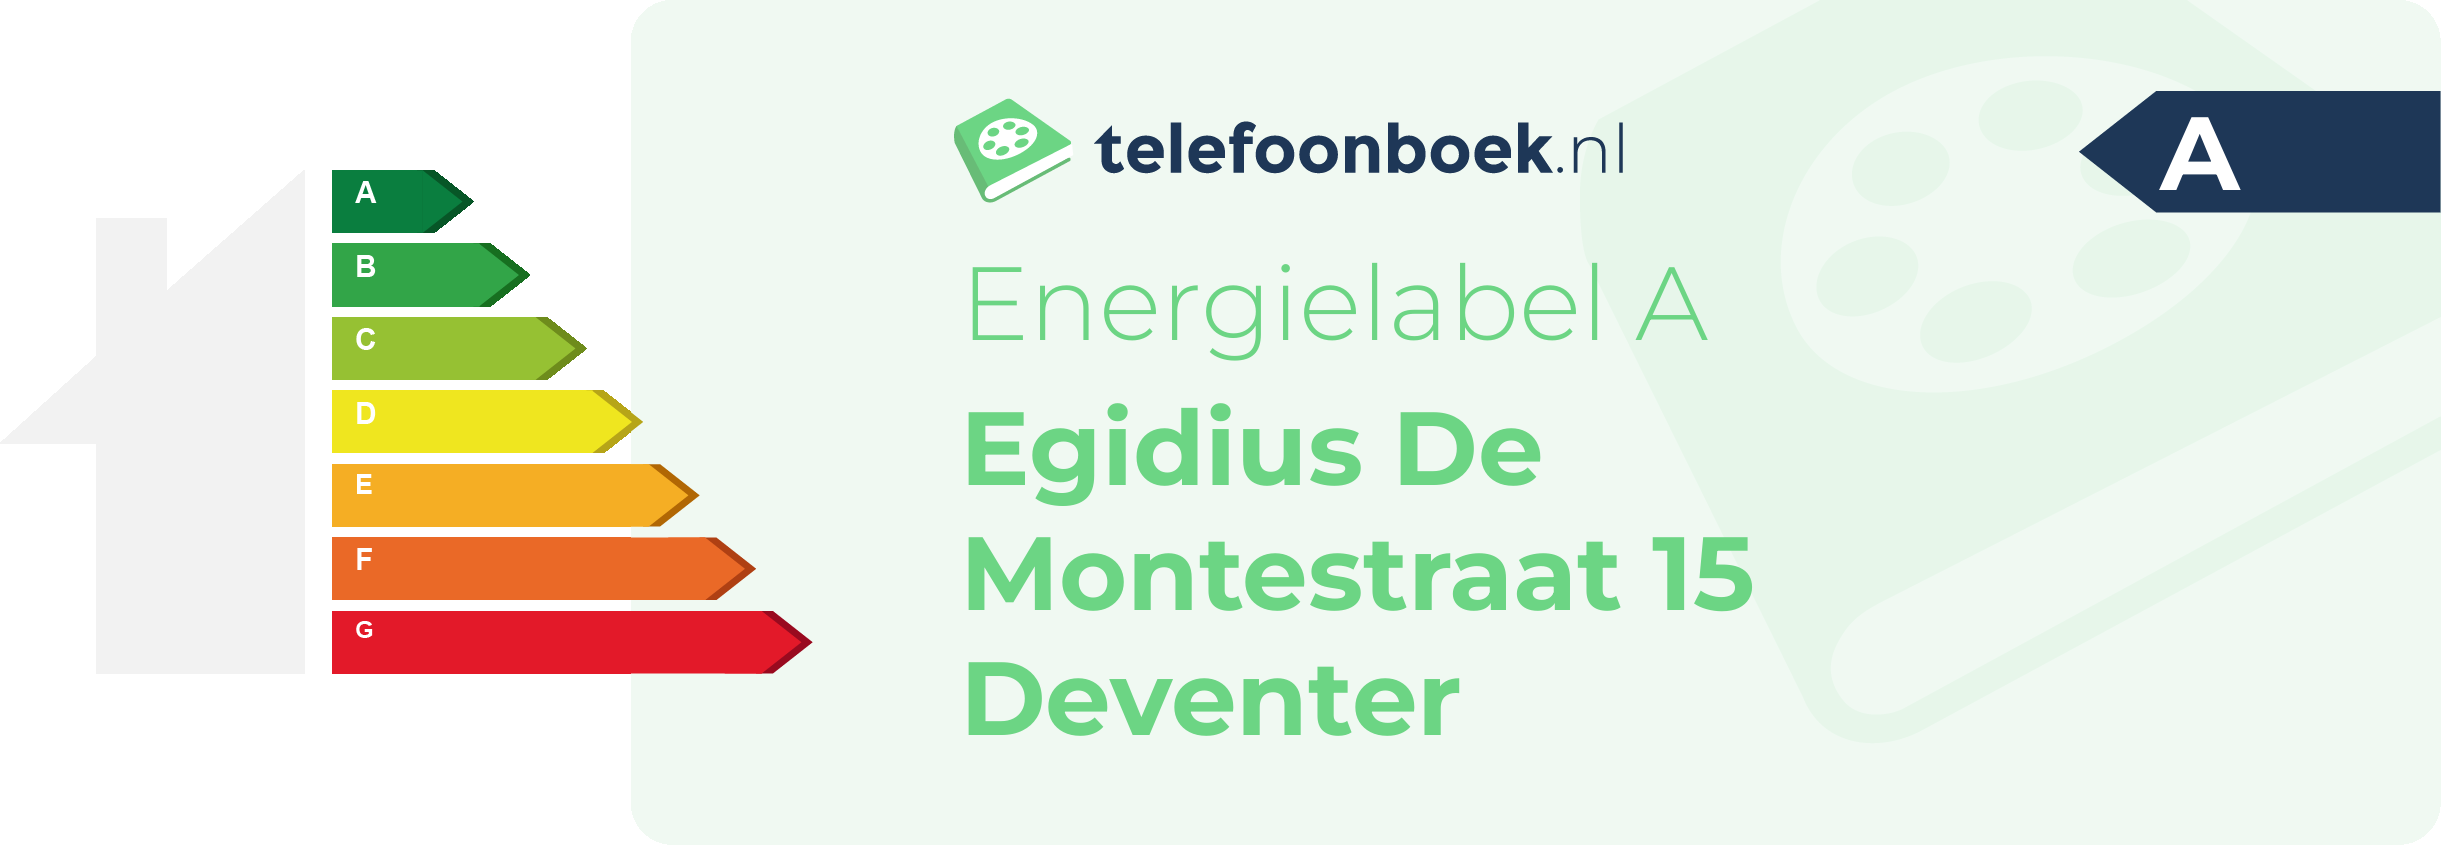 Energielabel Egidius De Montestraat 15 Deventer